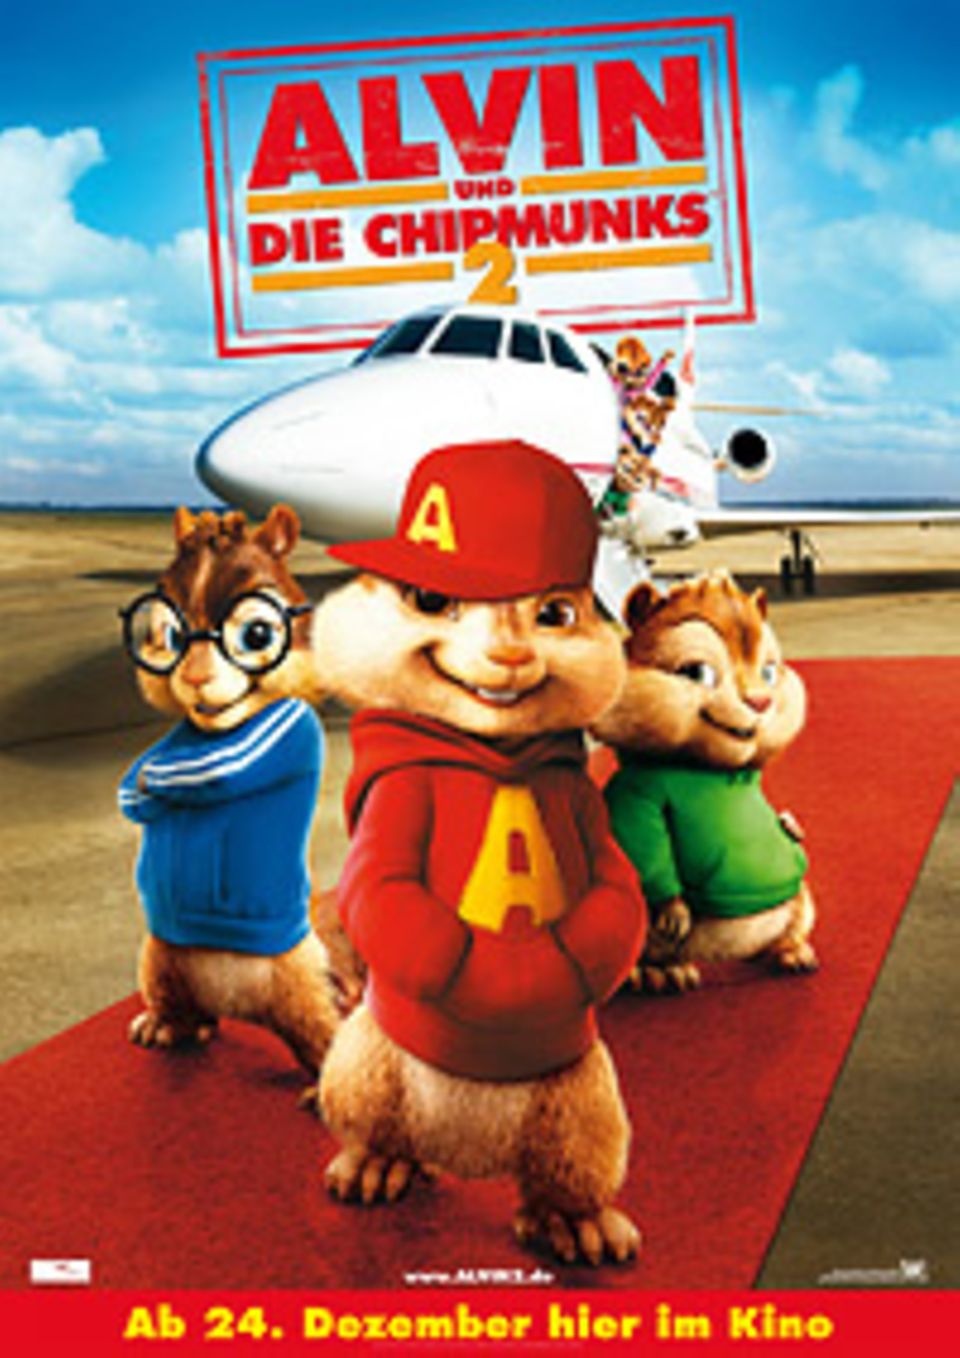 Kinotipp: "Alvin und die Chipmunks 2"